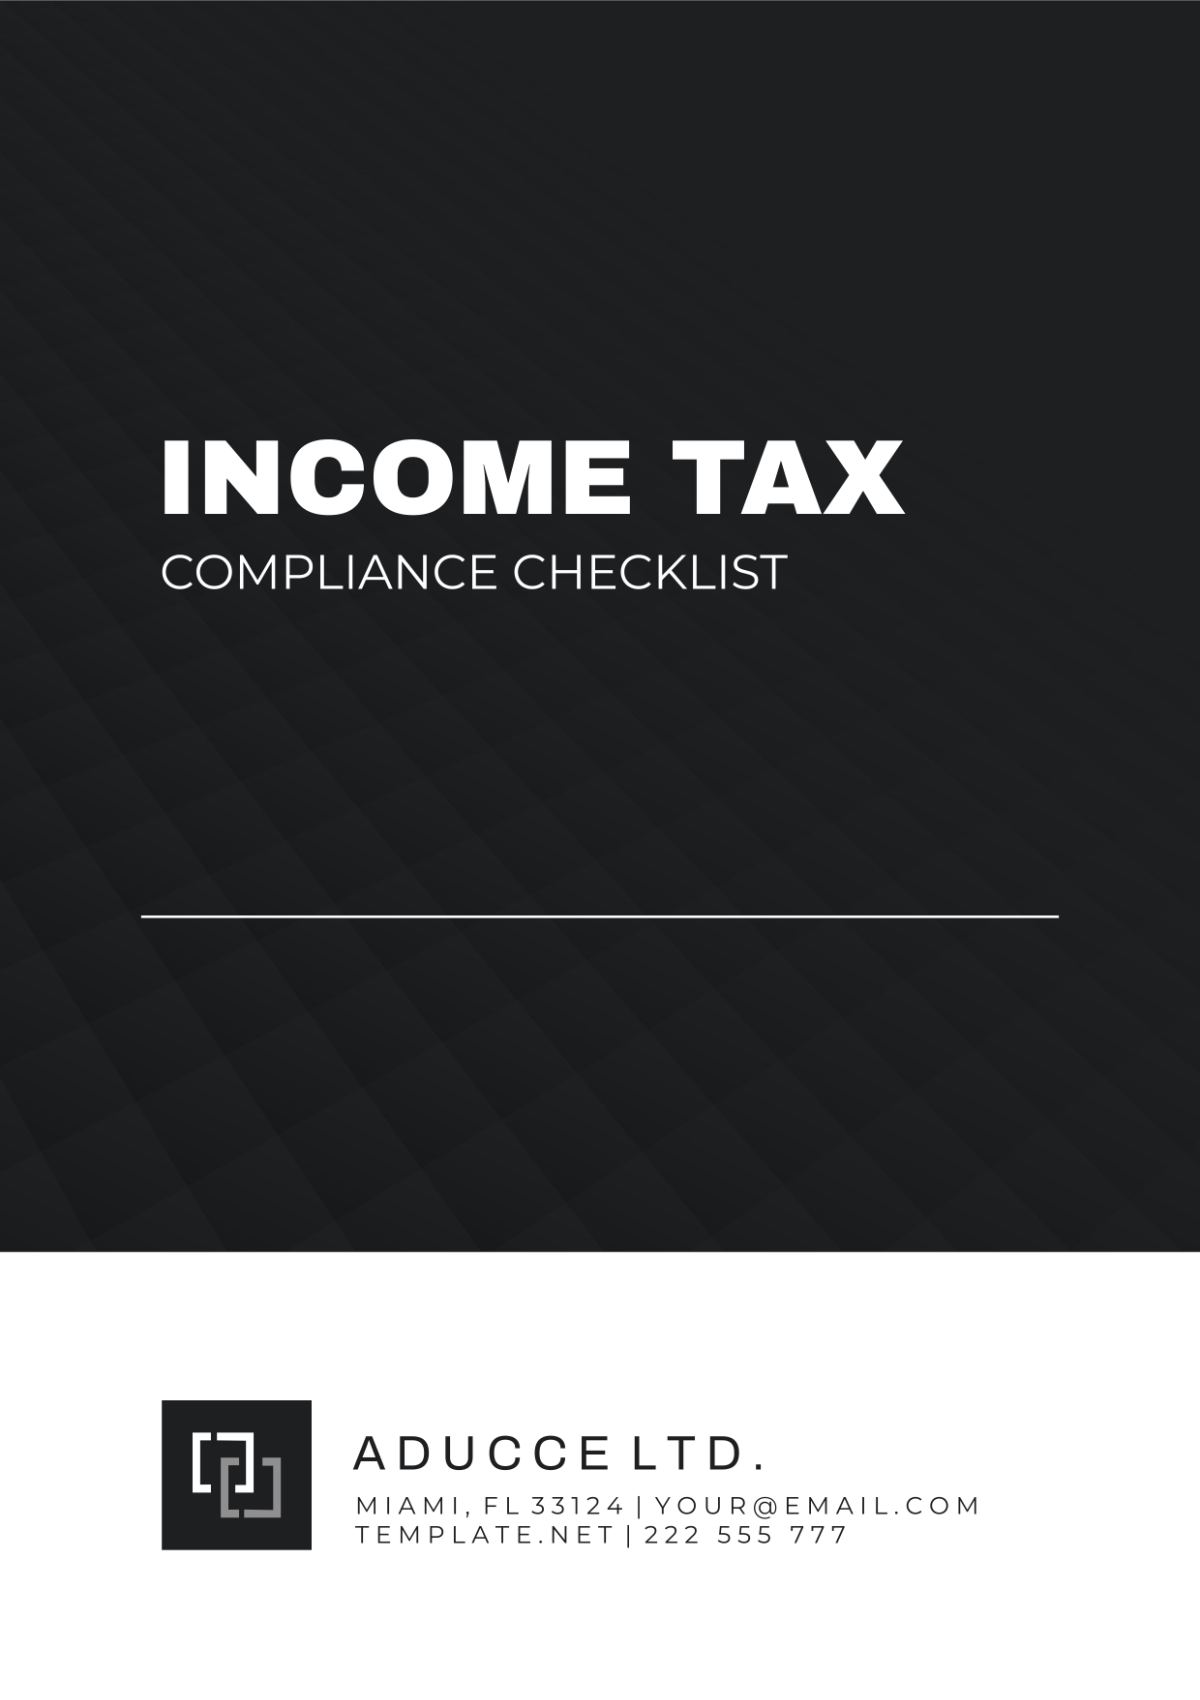 Income Tax Compliance Checklist Template